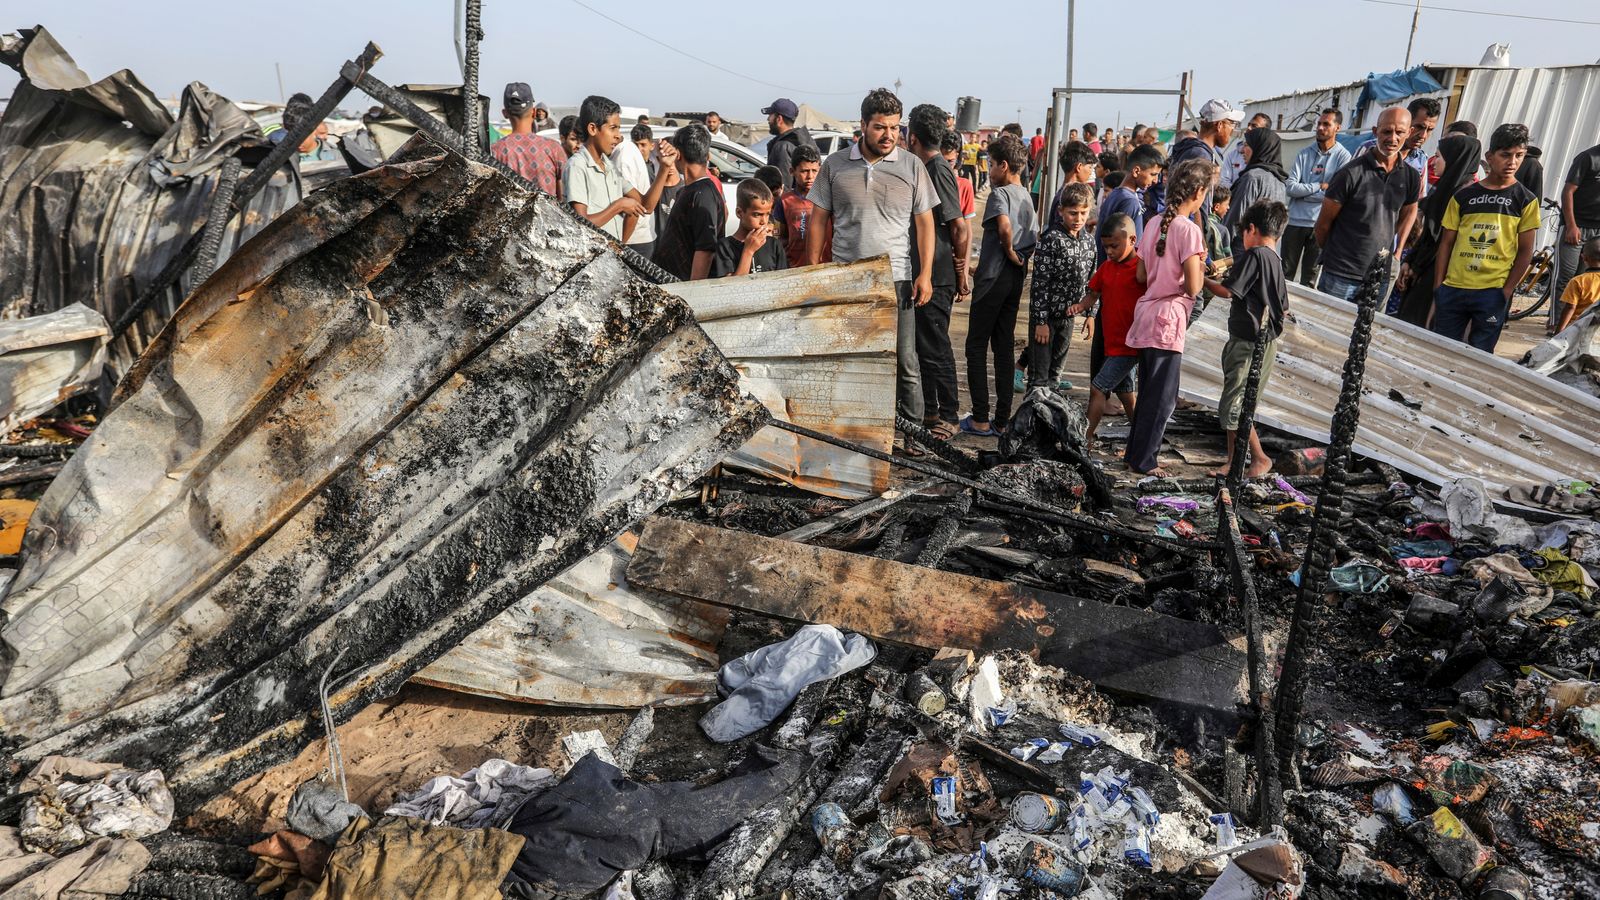 Рафах е „адът на Земята“, предупреждава ръководителят на агенцията на ООН, тъй като Нетаняху твърди, че въздушният удар е „трагична грешка“